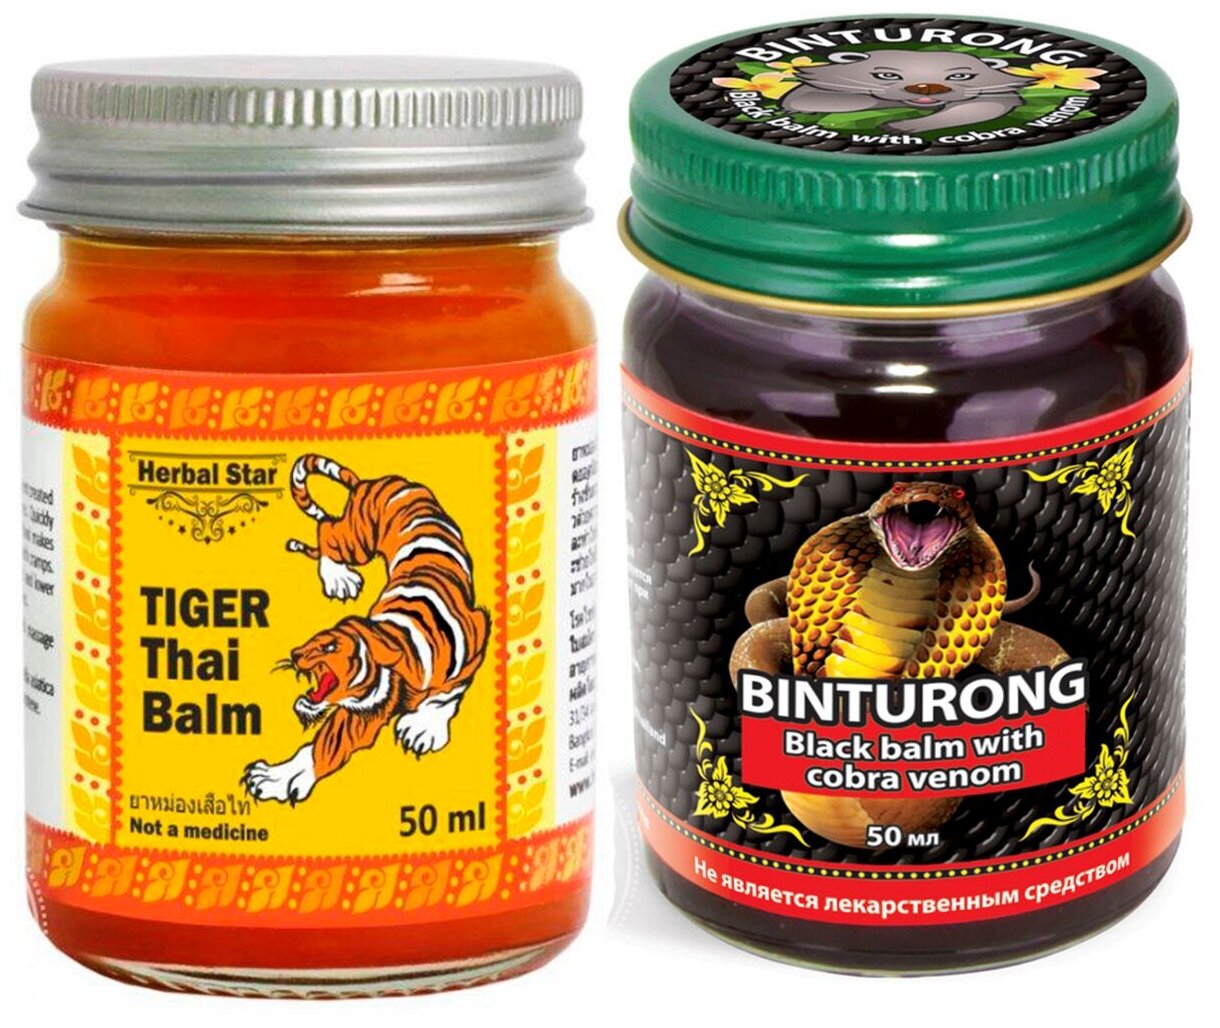 Бальзамы Binturong и Herbal star с пептидом яда черной кобры и тигра 50 мл + 50 мл